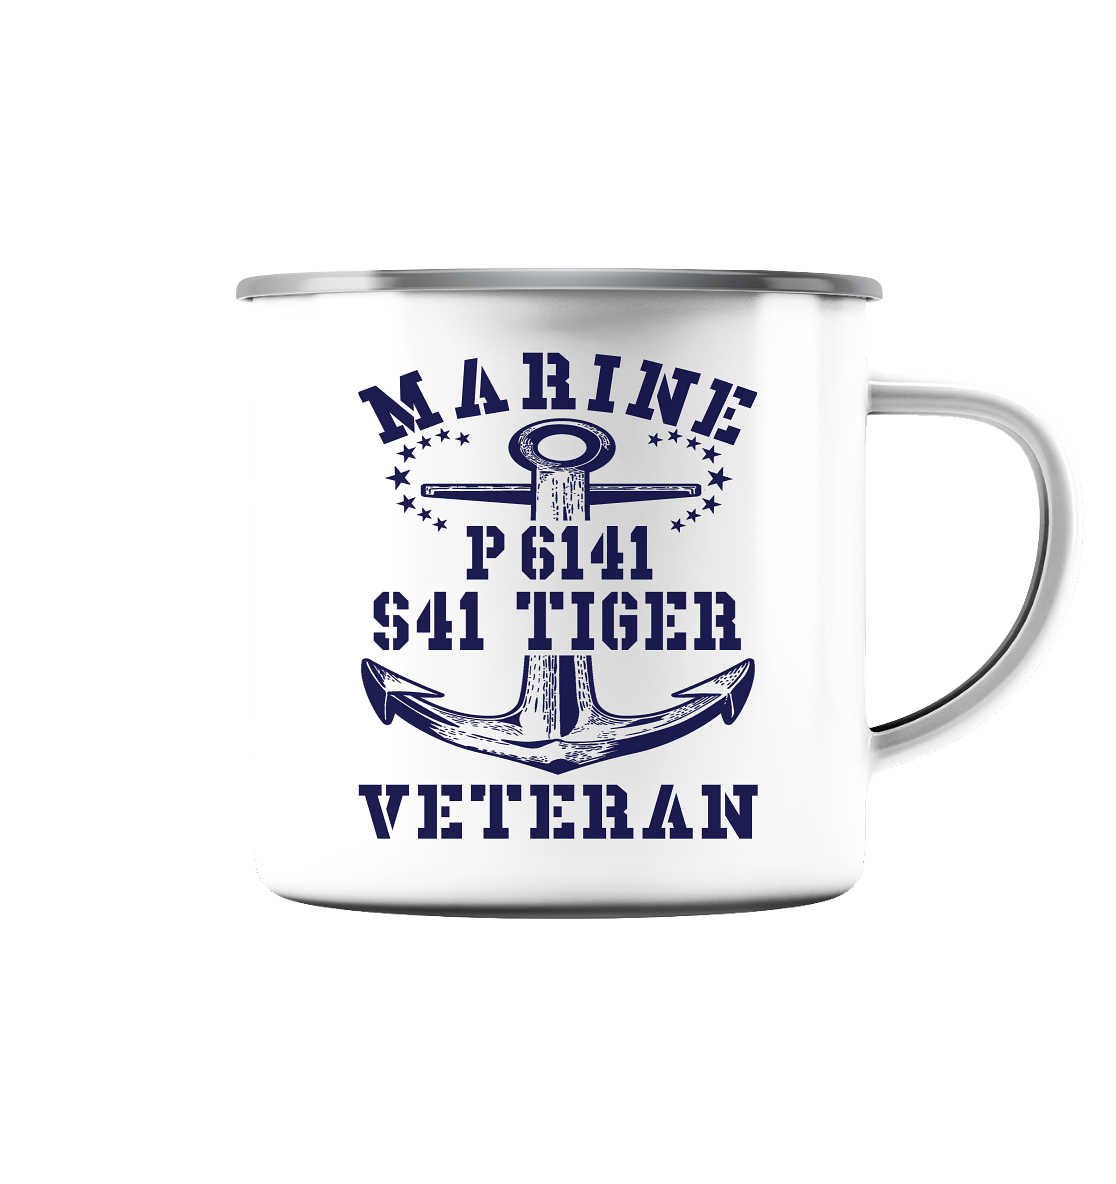 P6141 S41 TIGER Marine Veteran - Emaille Tasse (Silber)